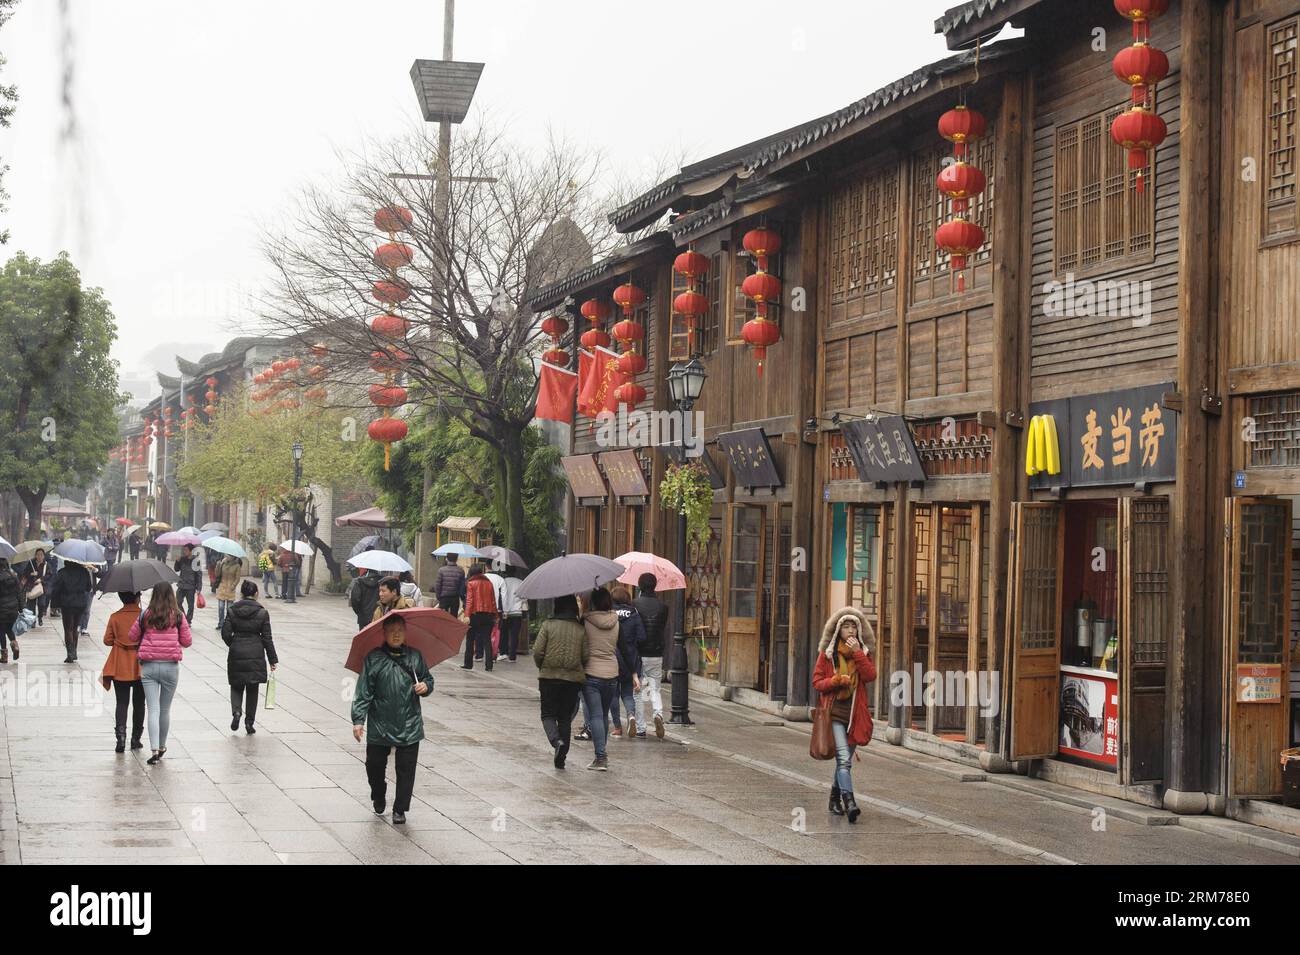 Die Menschen genießen die Aussicht in den alten Gassen drei Wege und sieben Gassen in Fuzhou, der Hauptstadt der südöstlichen chinesischen Provinz Fujian, am 18. Februar 2014. Viele Leute kamen hierher, um die Aussicht auf drei Lanes und sieben Gassen bei nebelndem Regen zu genießen. (Xinhua/Jiang Kehong) (af) CHINA-FUZHOU-TRAVEL(CN) PUBLICATIONxNOTxINxCHN Prominente genießen die Aussicht in der Antike genannt drei Bahnen und Sieben in Fuzhou Hauptstadt von Südostchina S Fujian Provinz 18. Februar 2014 VIELE Prominente kamen hierher, um die Aussicht auf drei Bahnen und Sieben in Nebelrinen XINHUA Jiang Kehong AF China Fuzhou zu genießen Reise CN PUBLICA Stockfoto